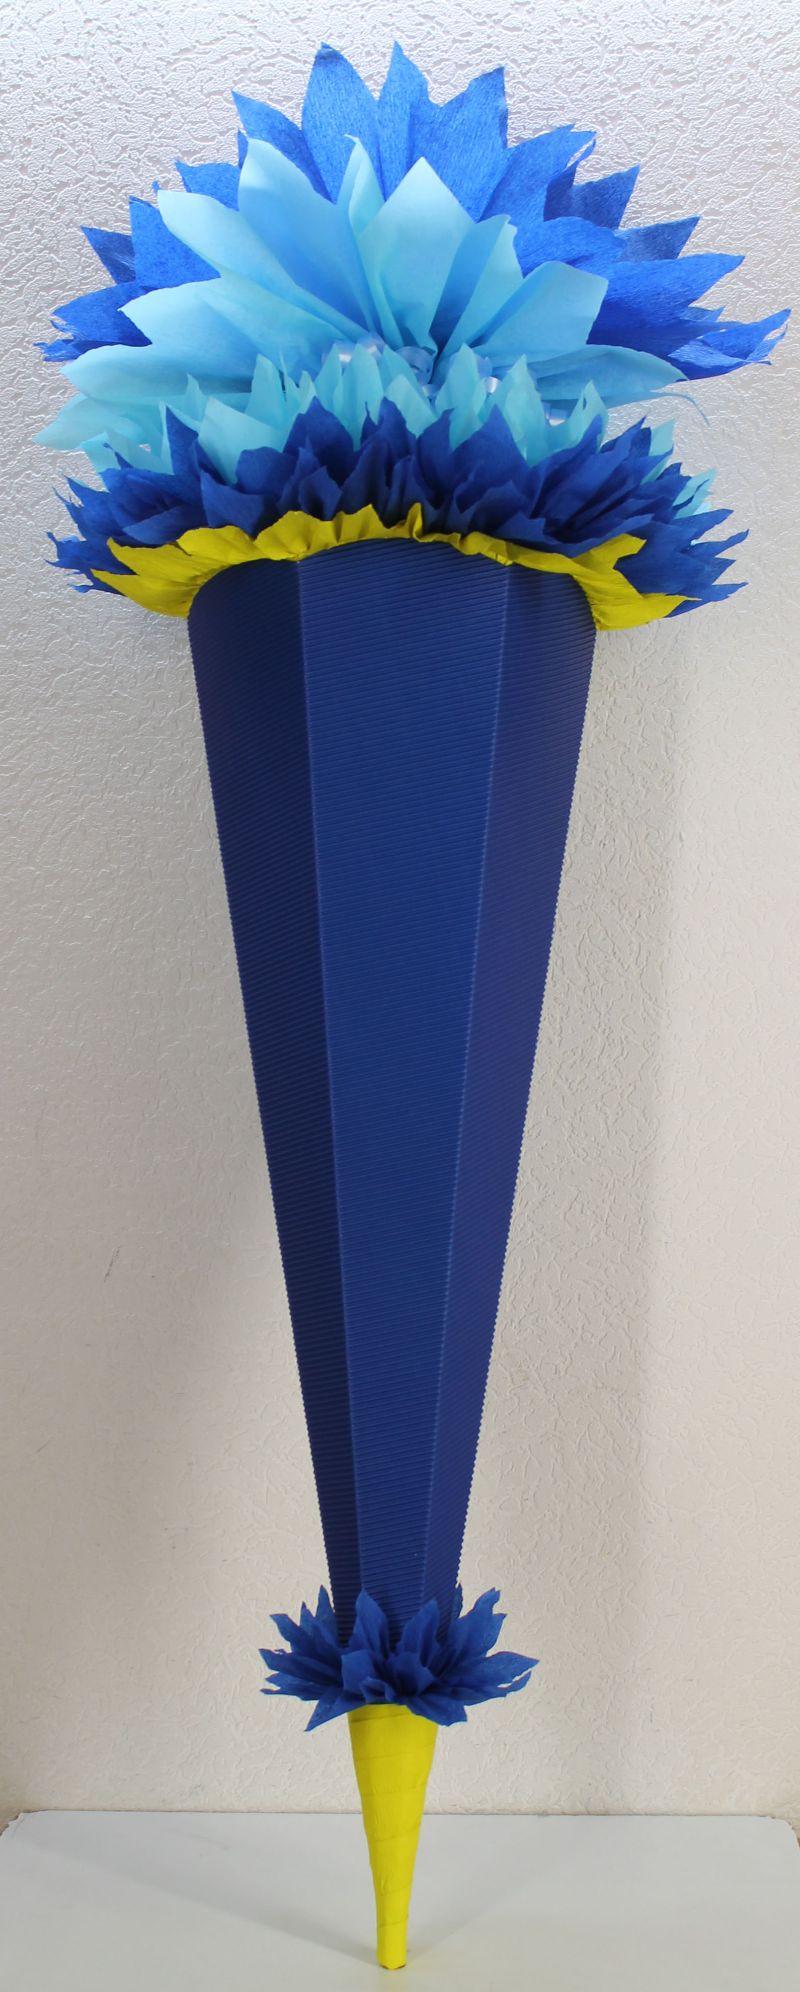  - Schultüte Zuckertüte Rohling zum selbst verzieren Rohling 70 75 80 85 90 100 cm / 1m für Jungen HANDARBEIT gelb dunkelblau blau 